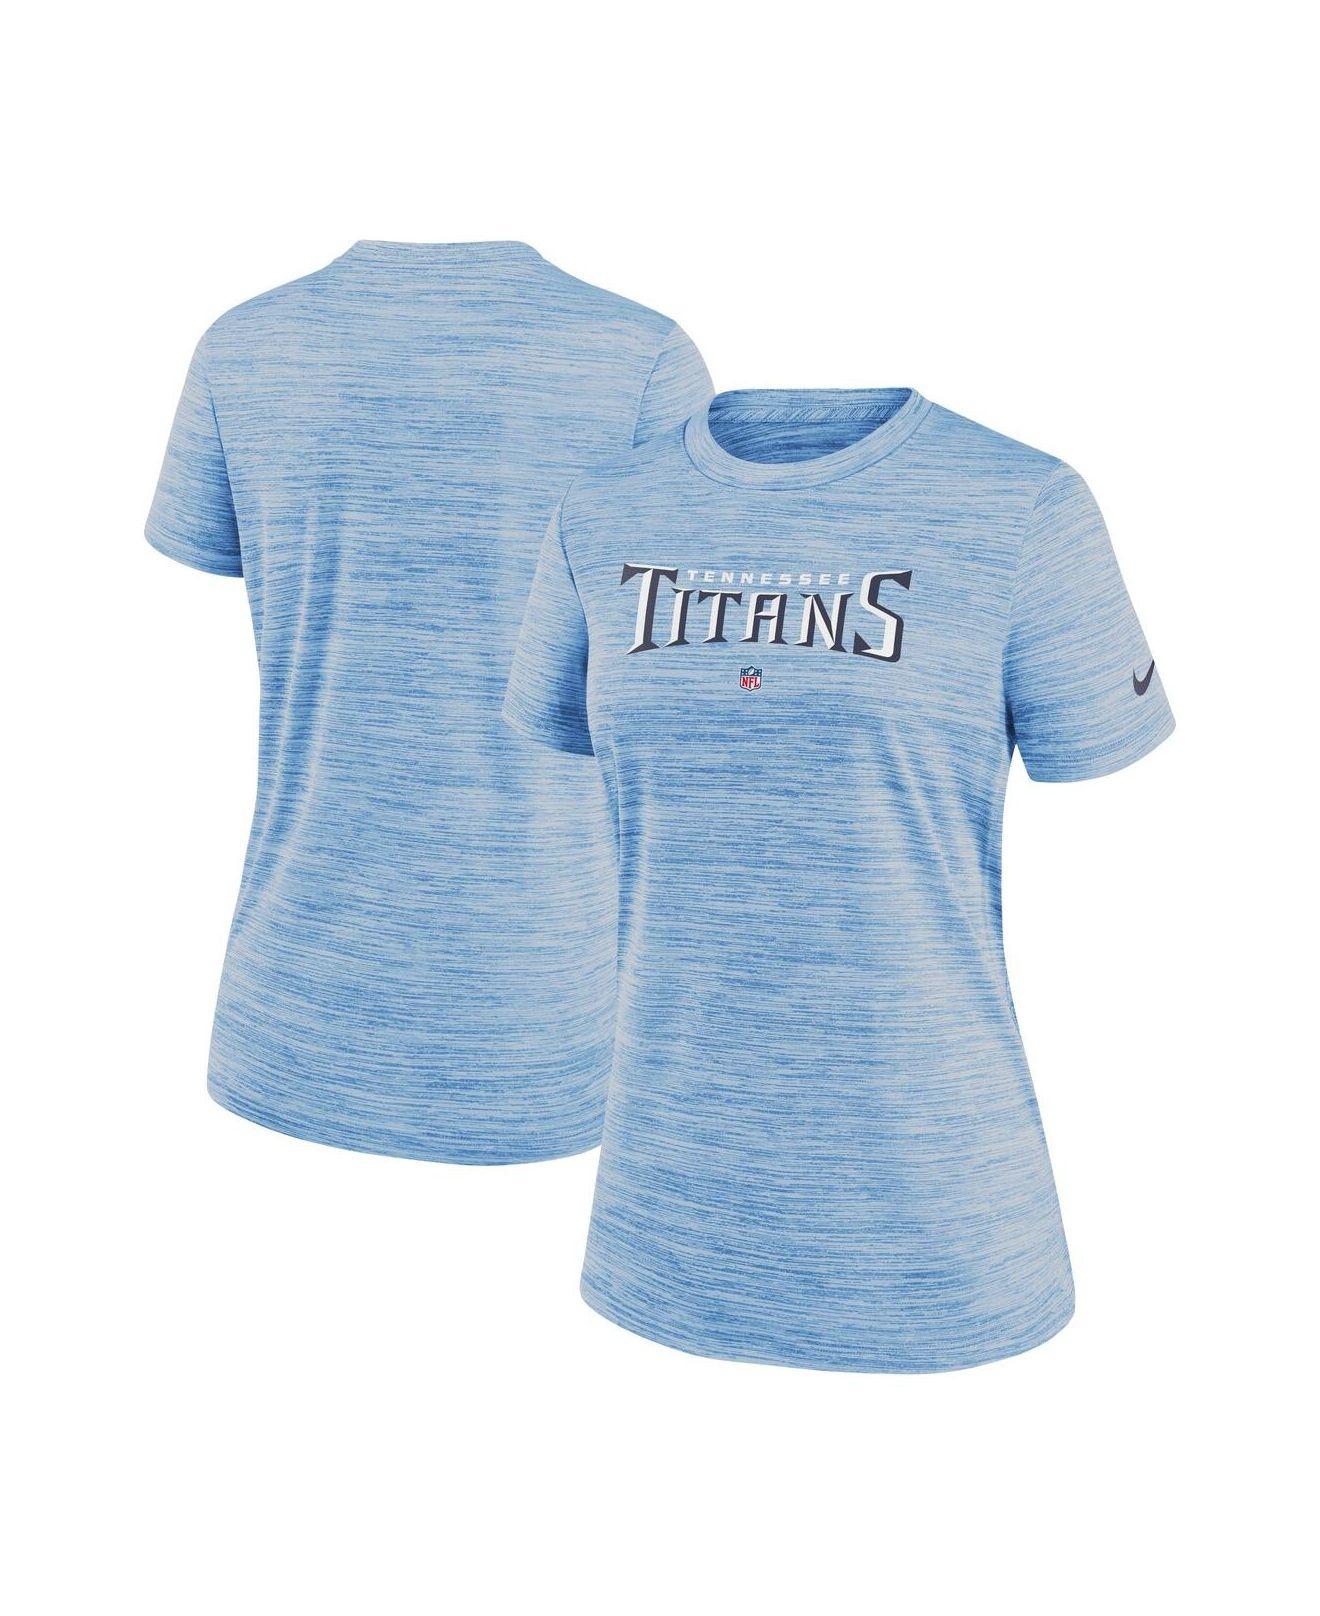 tennessee titans dri fit shirt